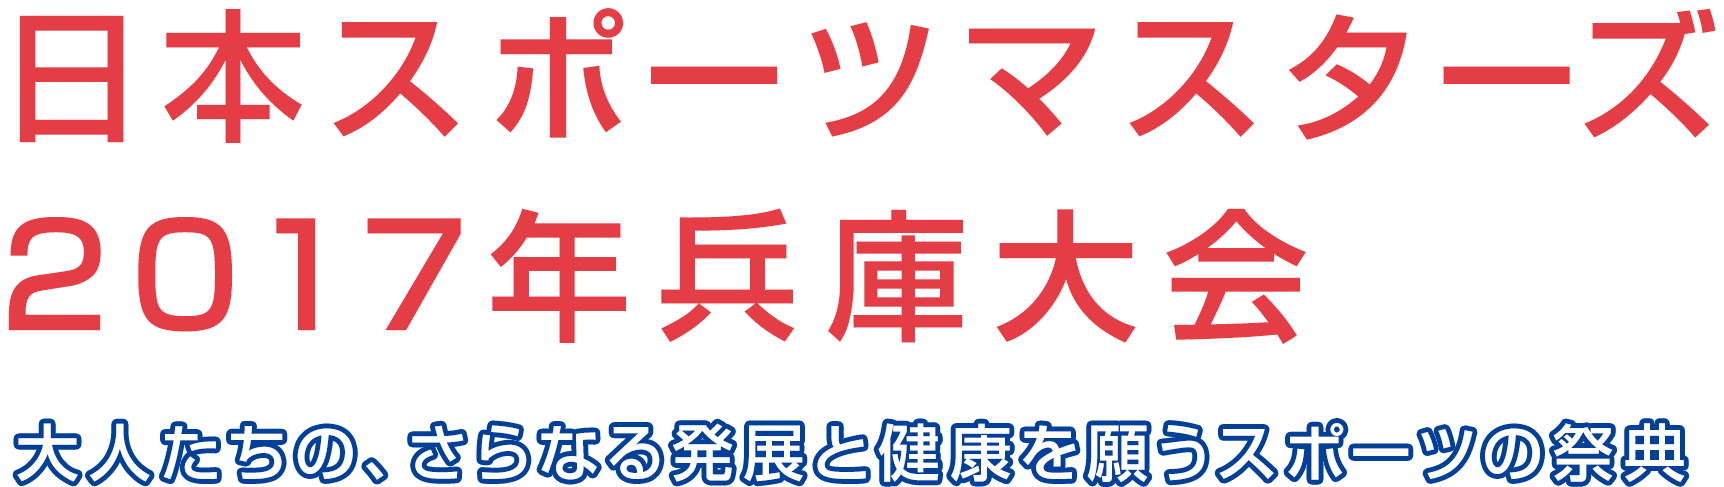 日本スポーツマスターズ2017年兵庫大会/大人たちの、さらなる発展と健康を願うスポーツの祭典